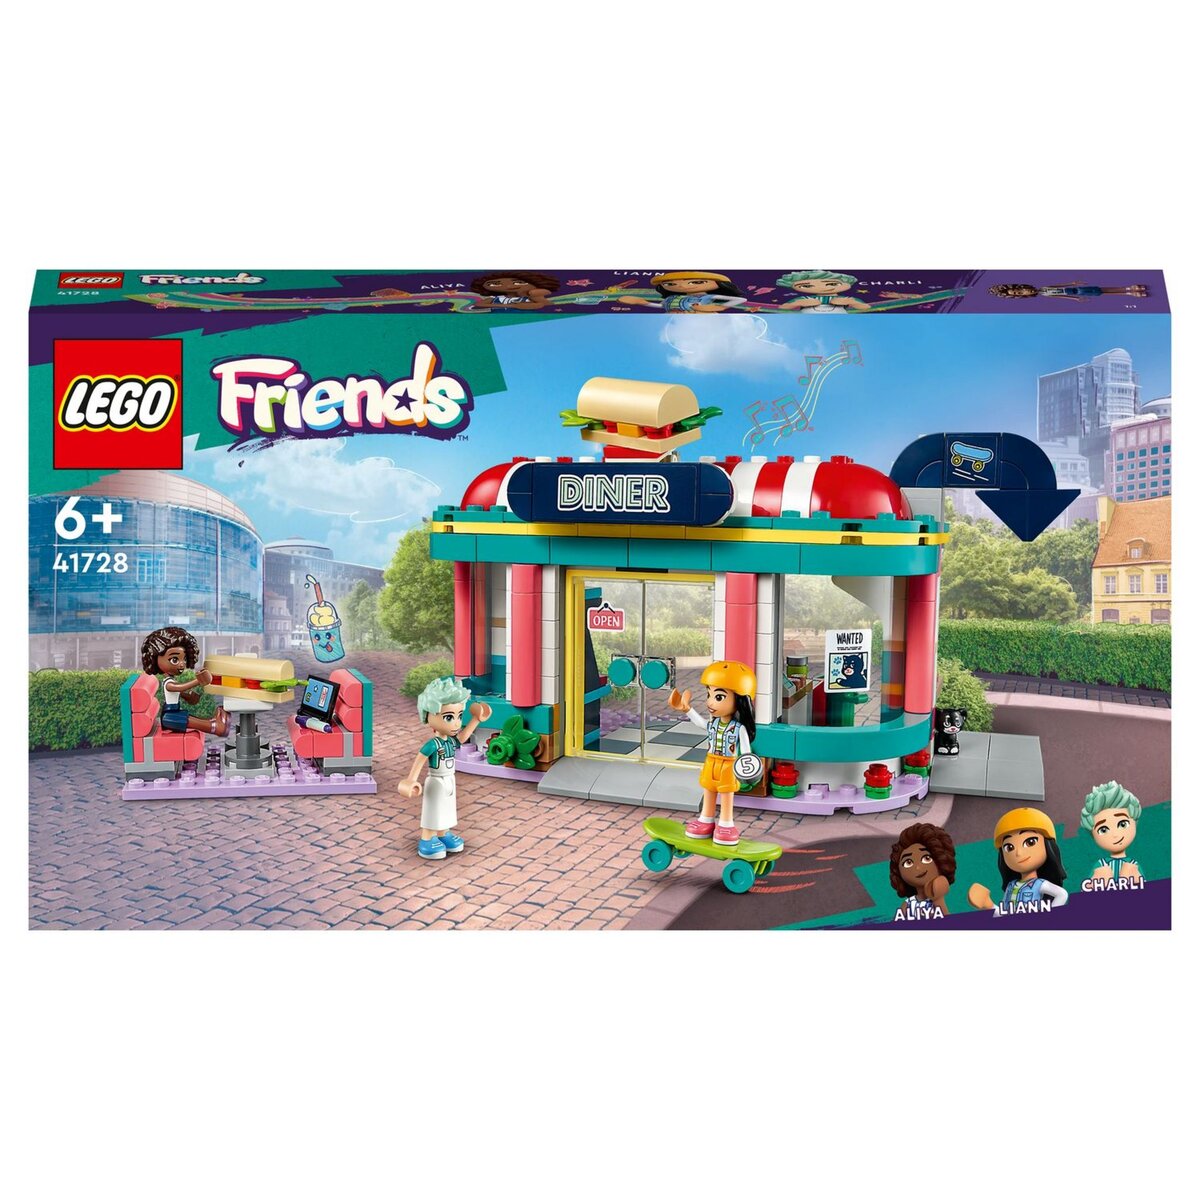 LEGO Friends  Acheter des sets en ligne 